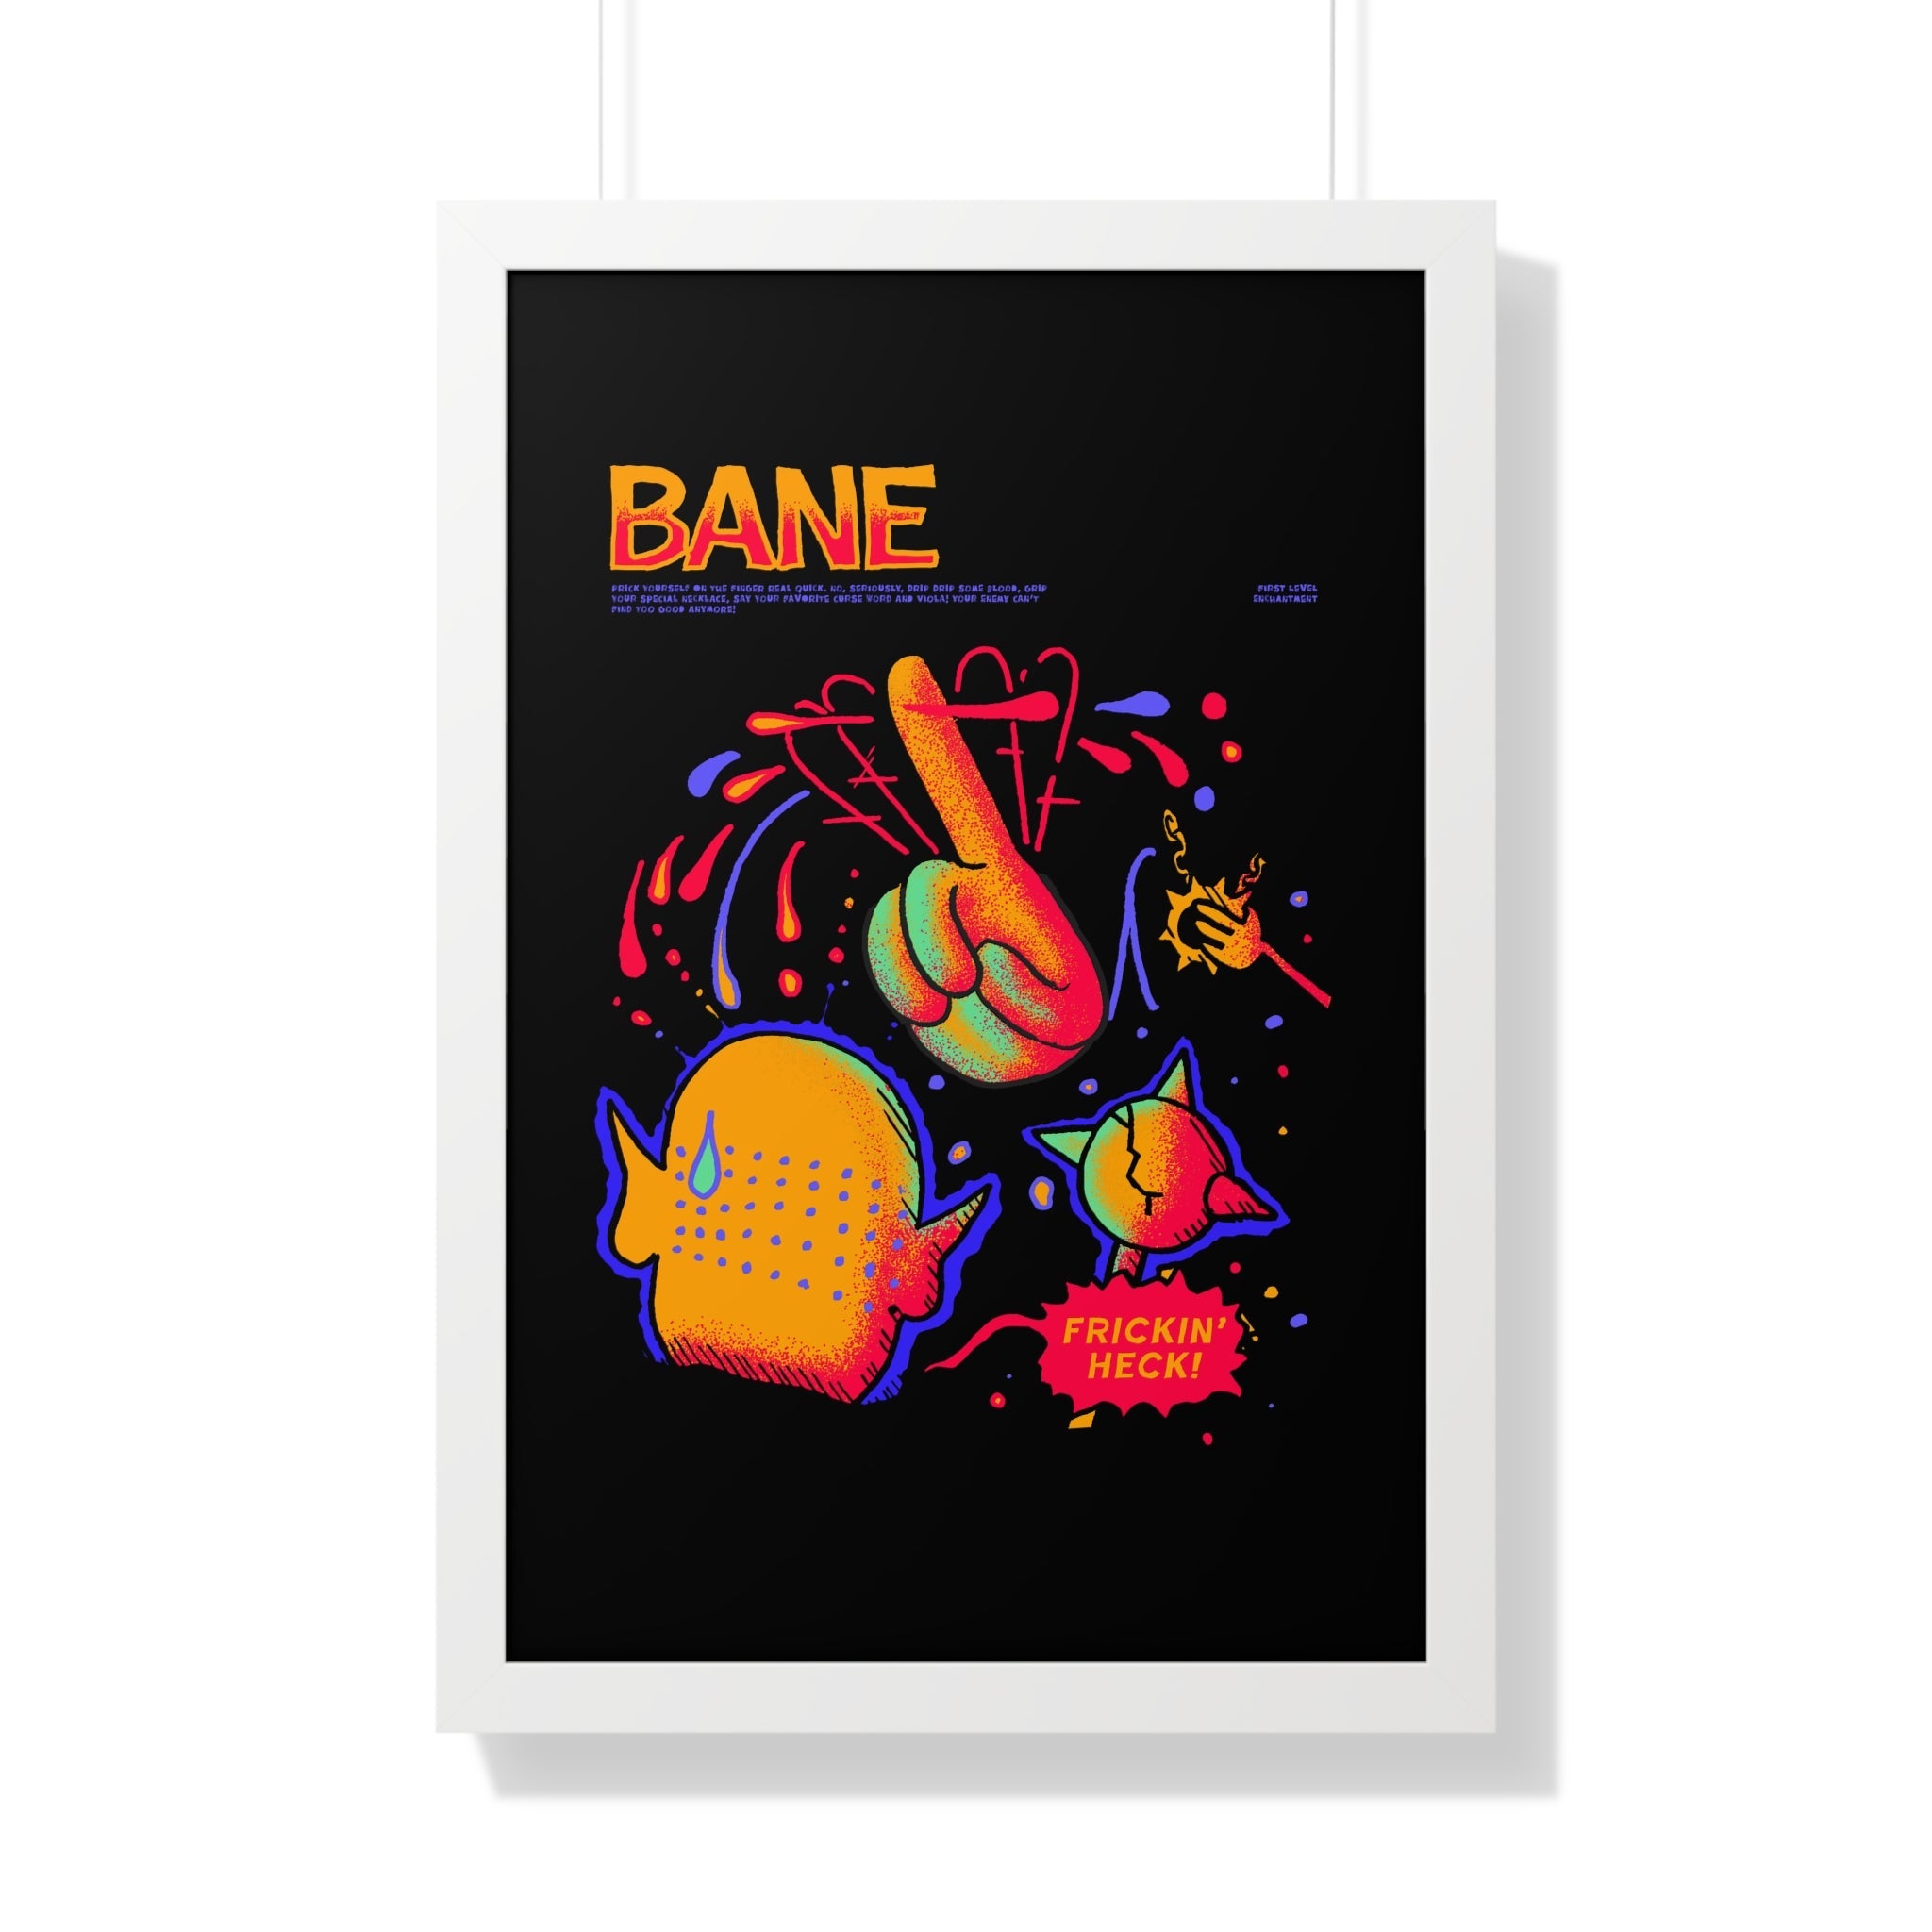 Bane | Framed Poster - Framed Poster - Ace of Gnomes - 30451819830916882631